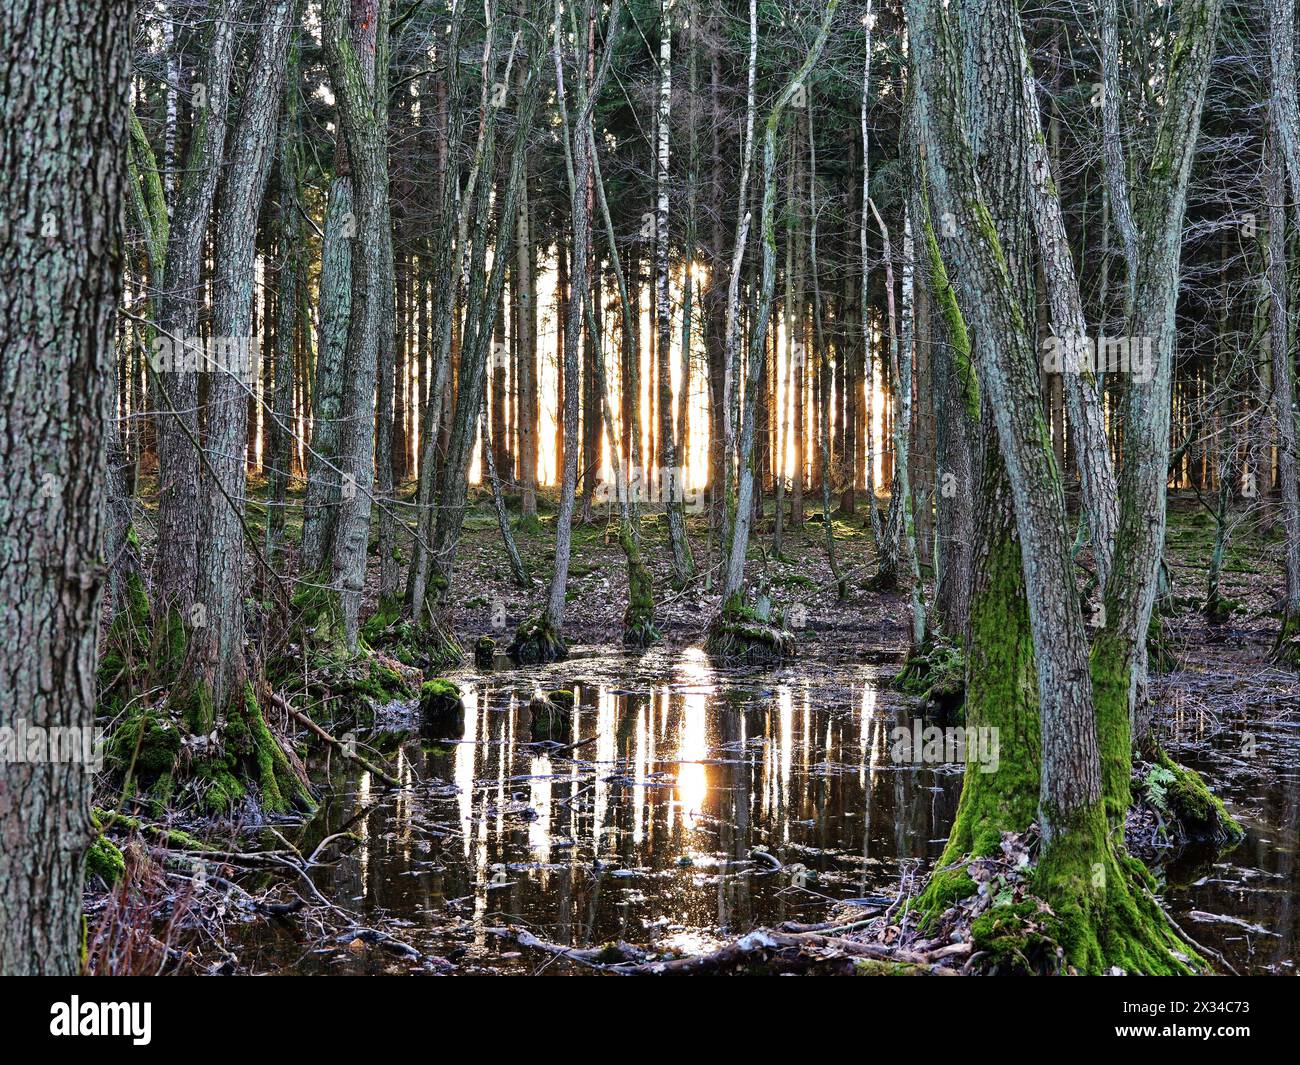 Waldgebiete mit Reflexionen in Wasserflächen von Mooren im Ketelshagen-Waldgebiet auf der Insel Rügen. Stockfoto